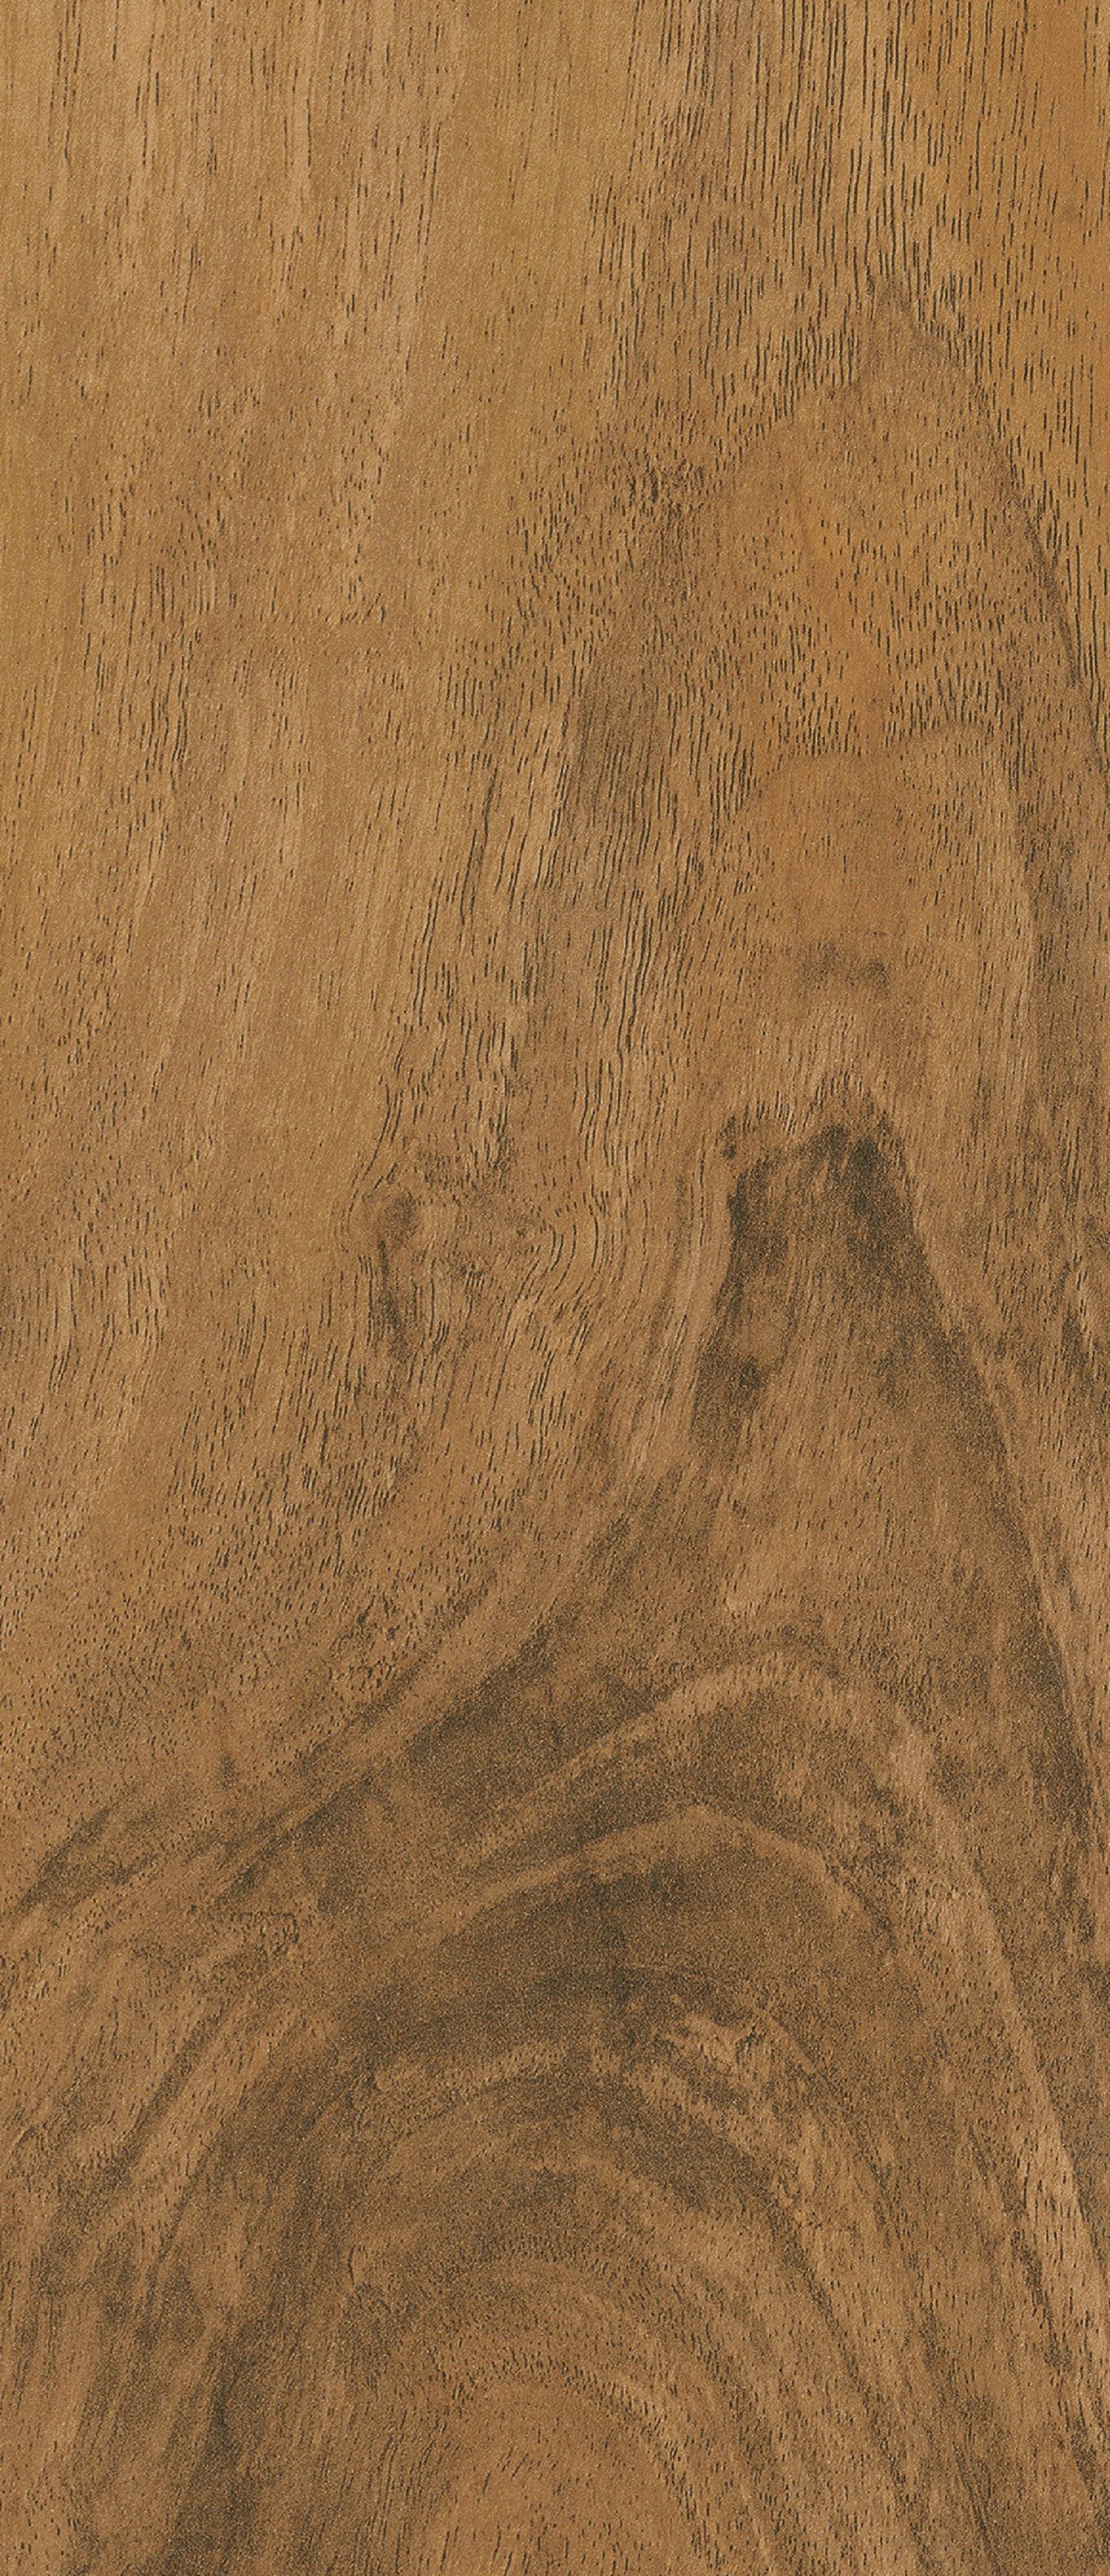 High Gloss Medium Oak 8mm Laminate Flooring -